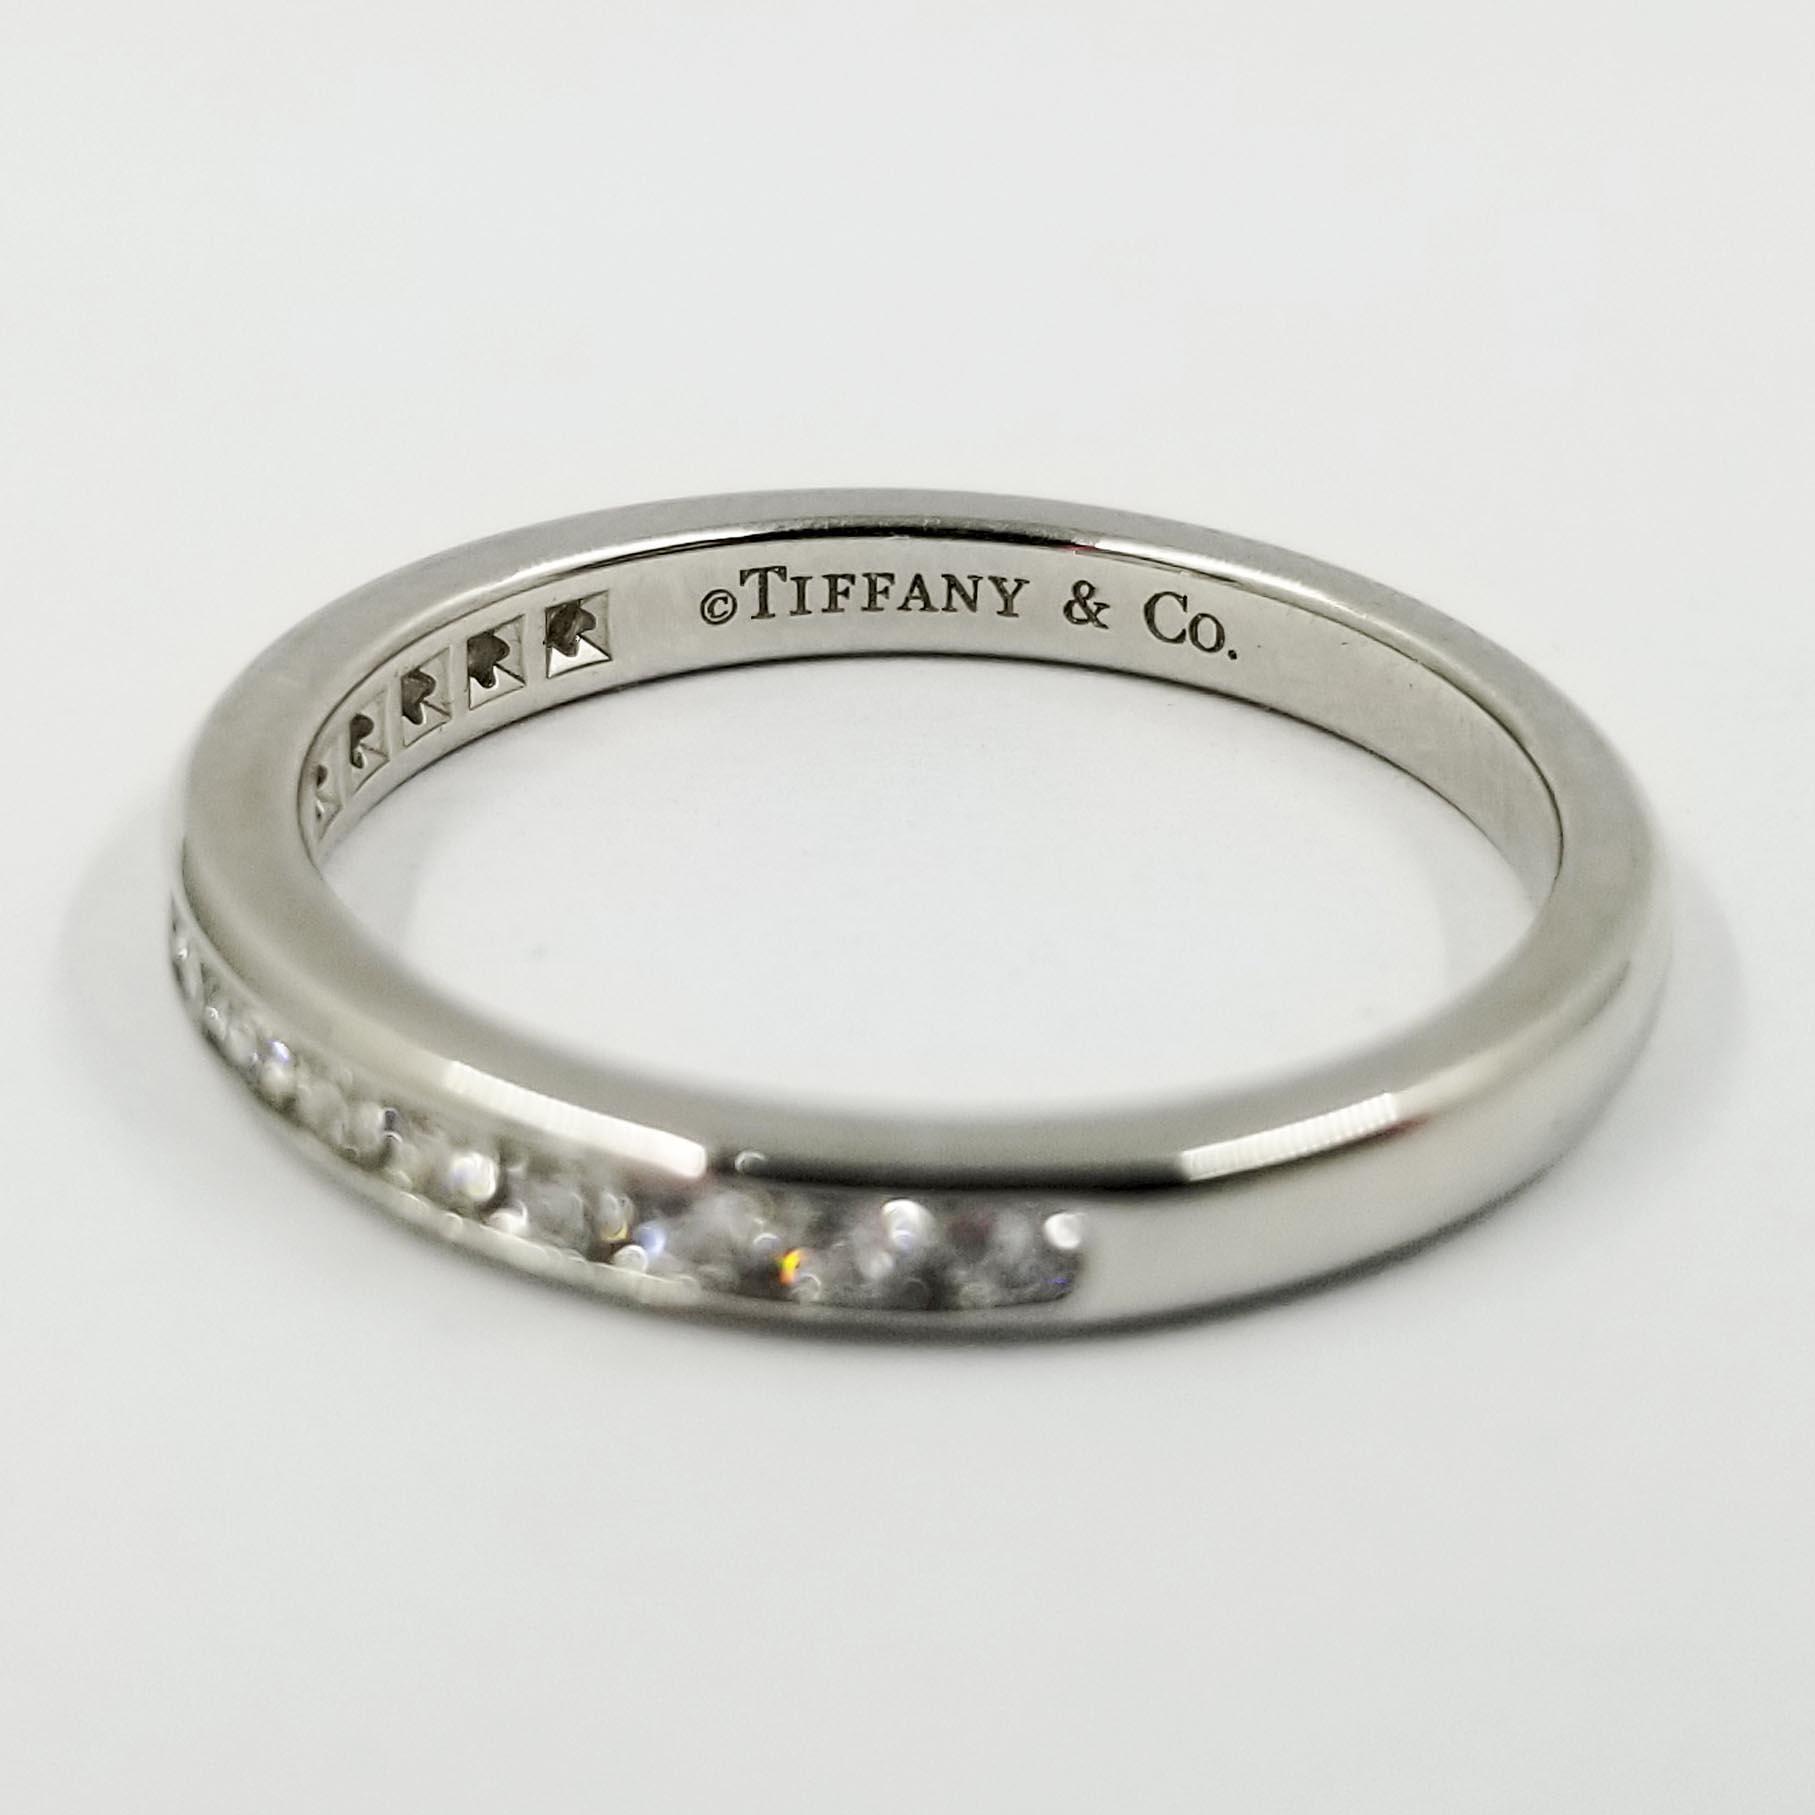 Ce bracelet classique en diamants est fabriqué en platine par Tiffany & Co. Elle comporte 15 diamants ronds de taille brillant, sertis en canal, de couleur F et de pureté VVS, d'un poids total d'environ 0,25 carat. L'intérieur est estampillé PT950.